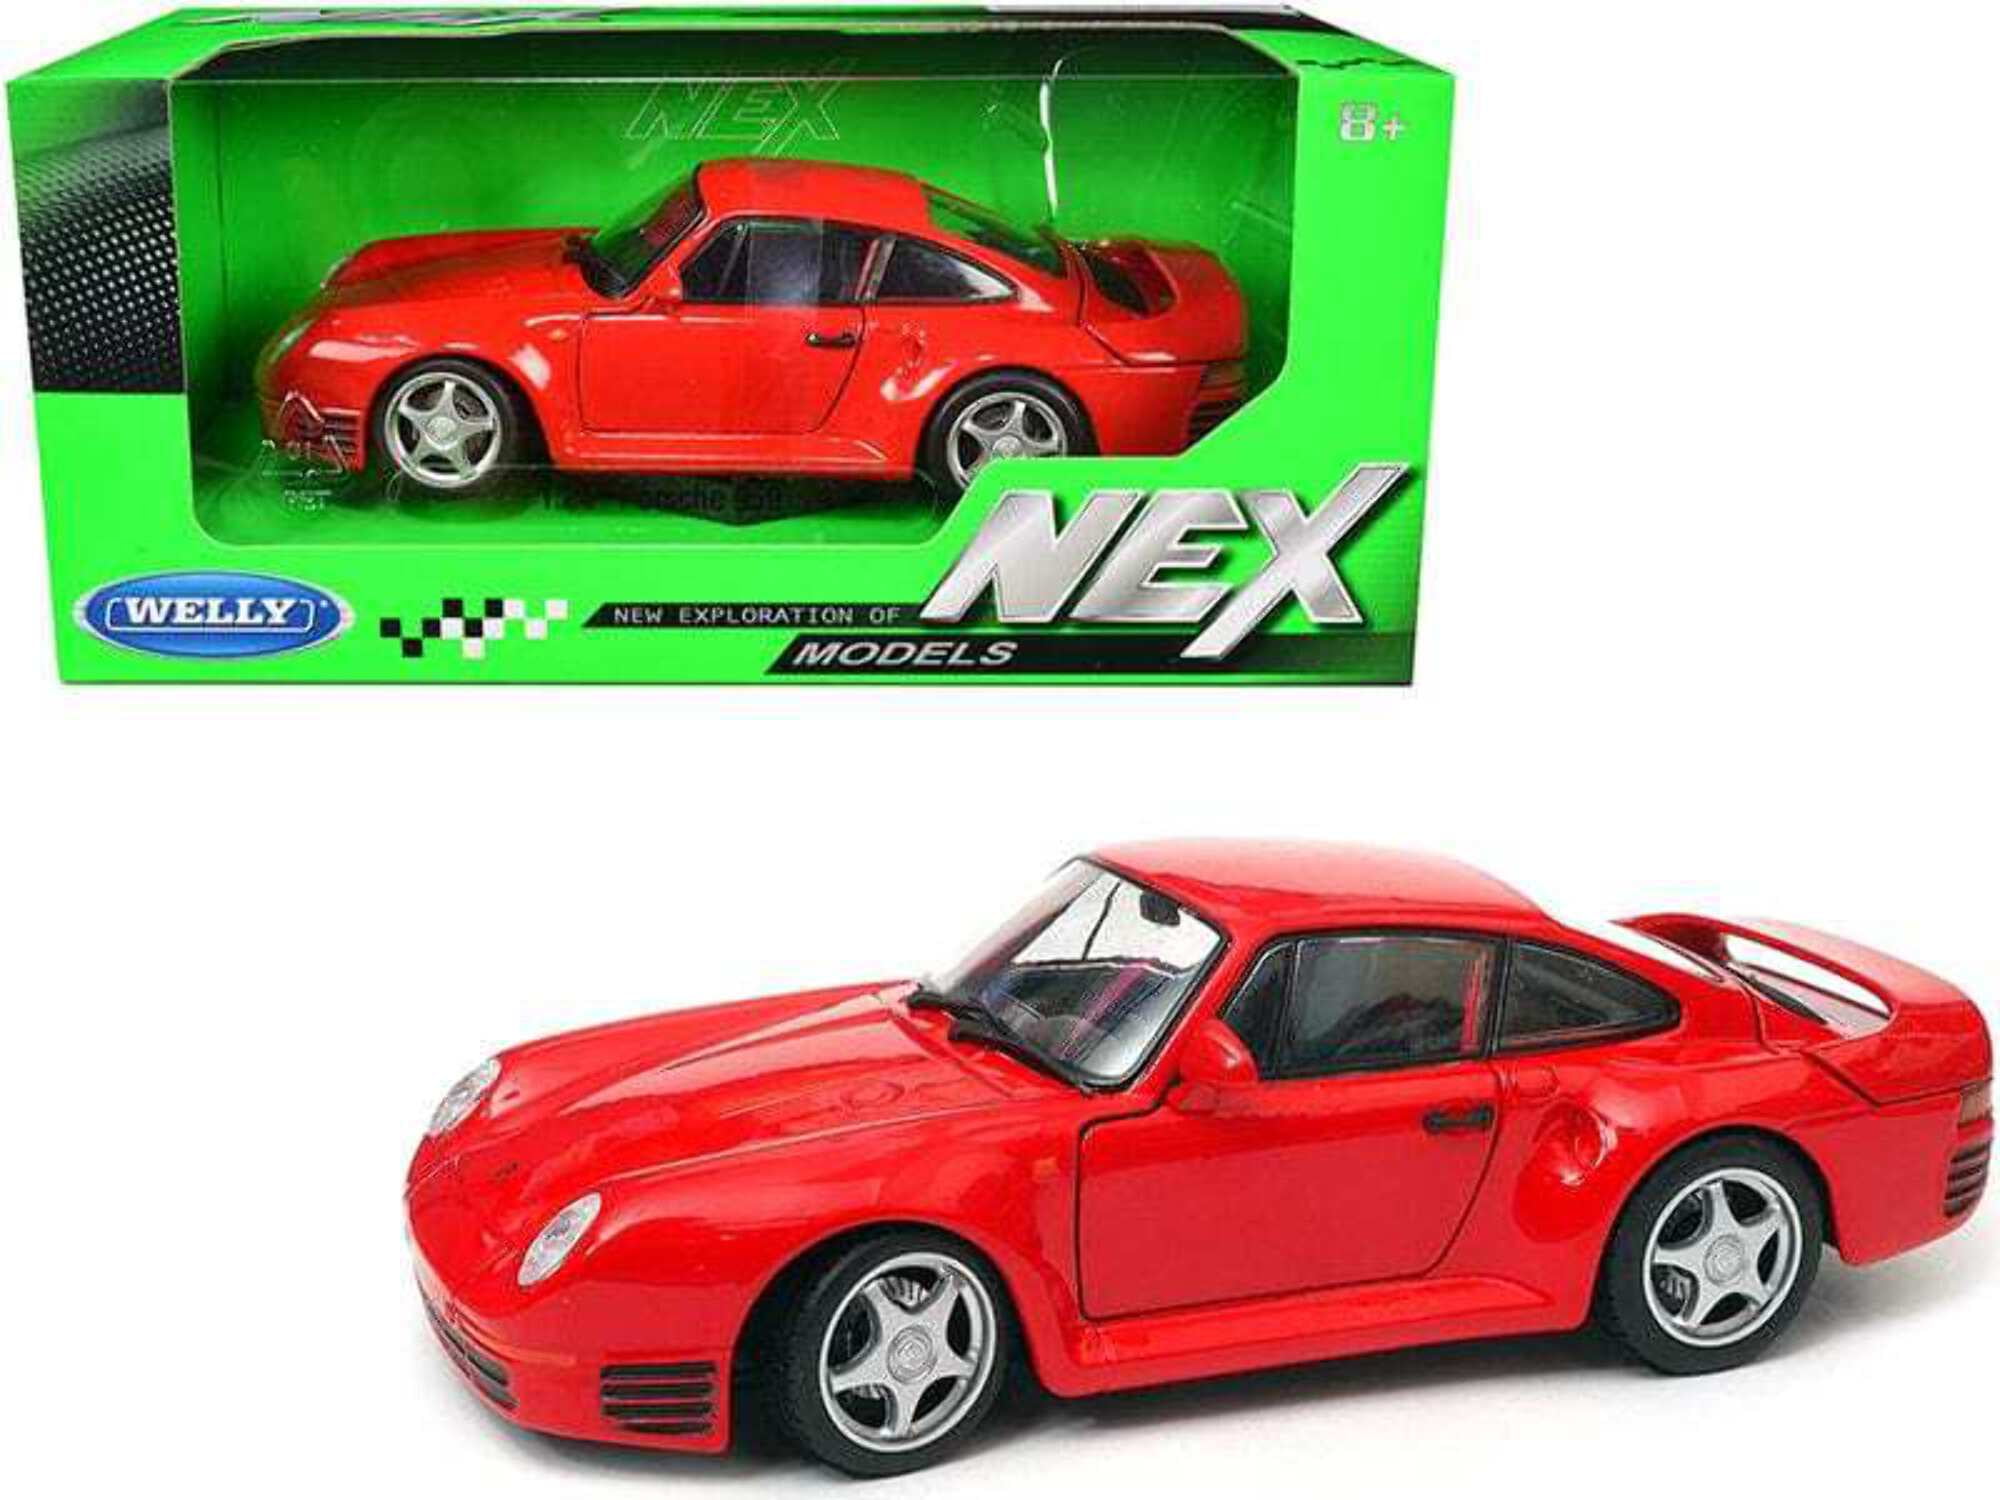 24076r 1-24 Scale Porsche 959 Red & Silver Wheels Nex Diecast Model Car -  WELLY